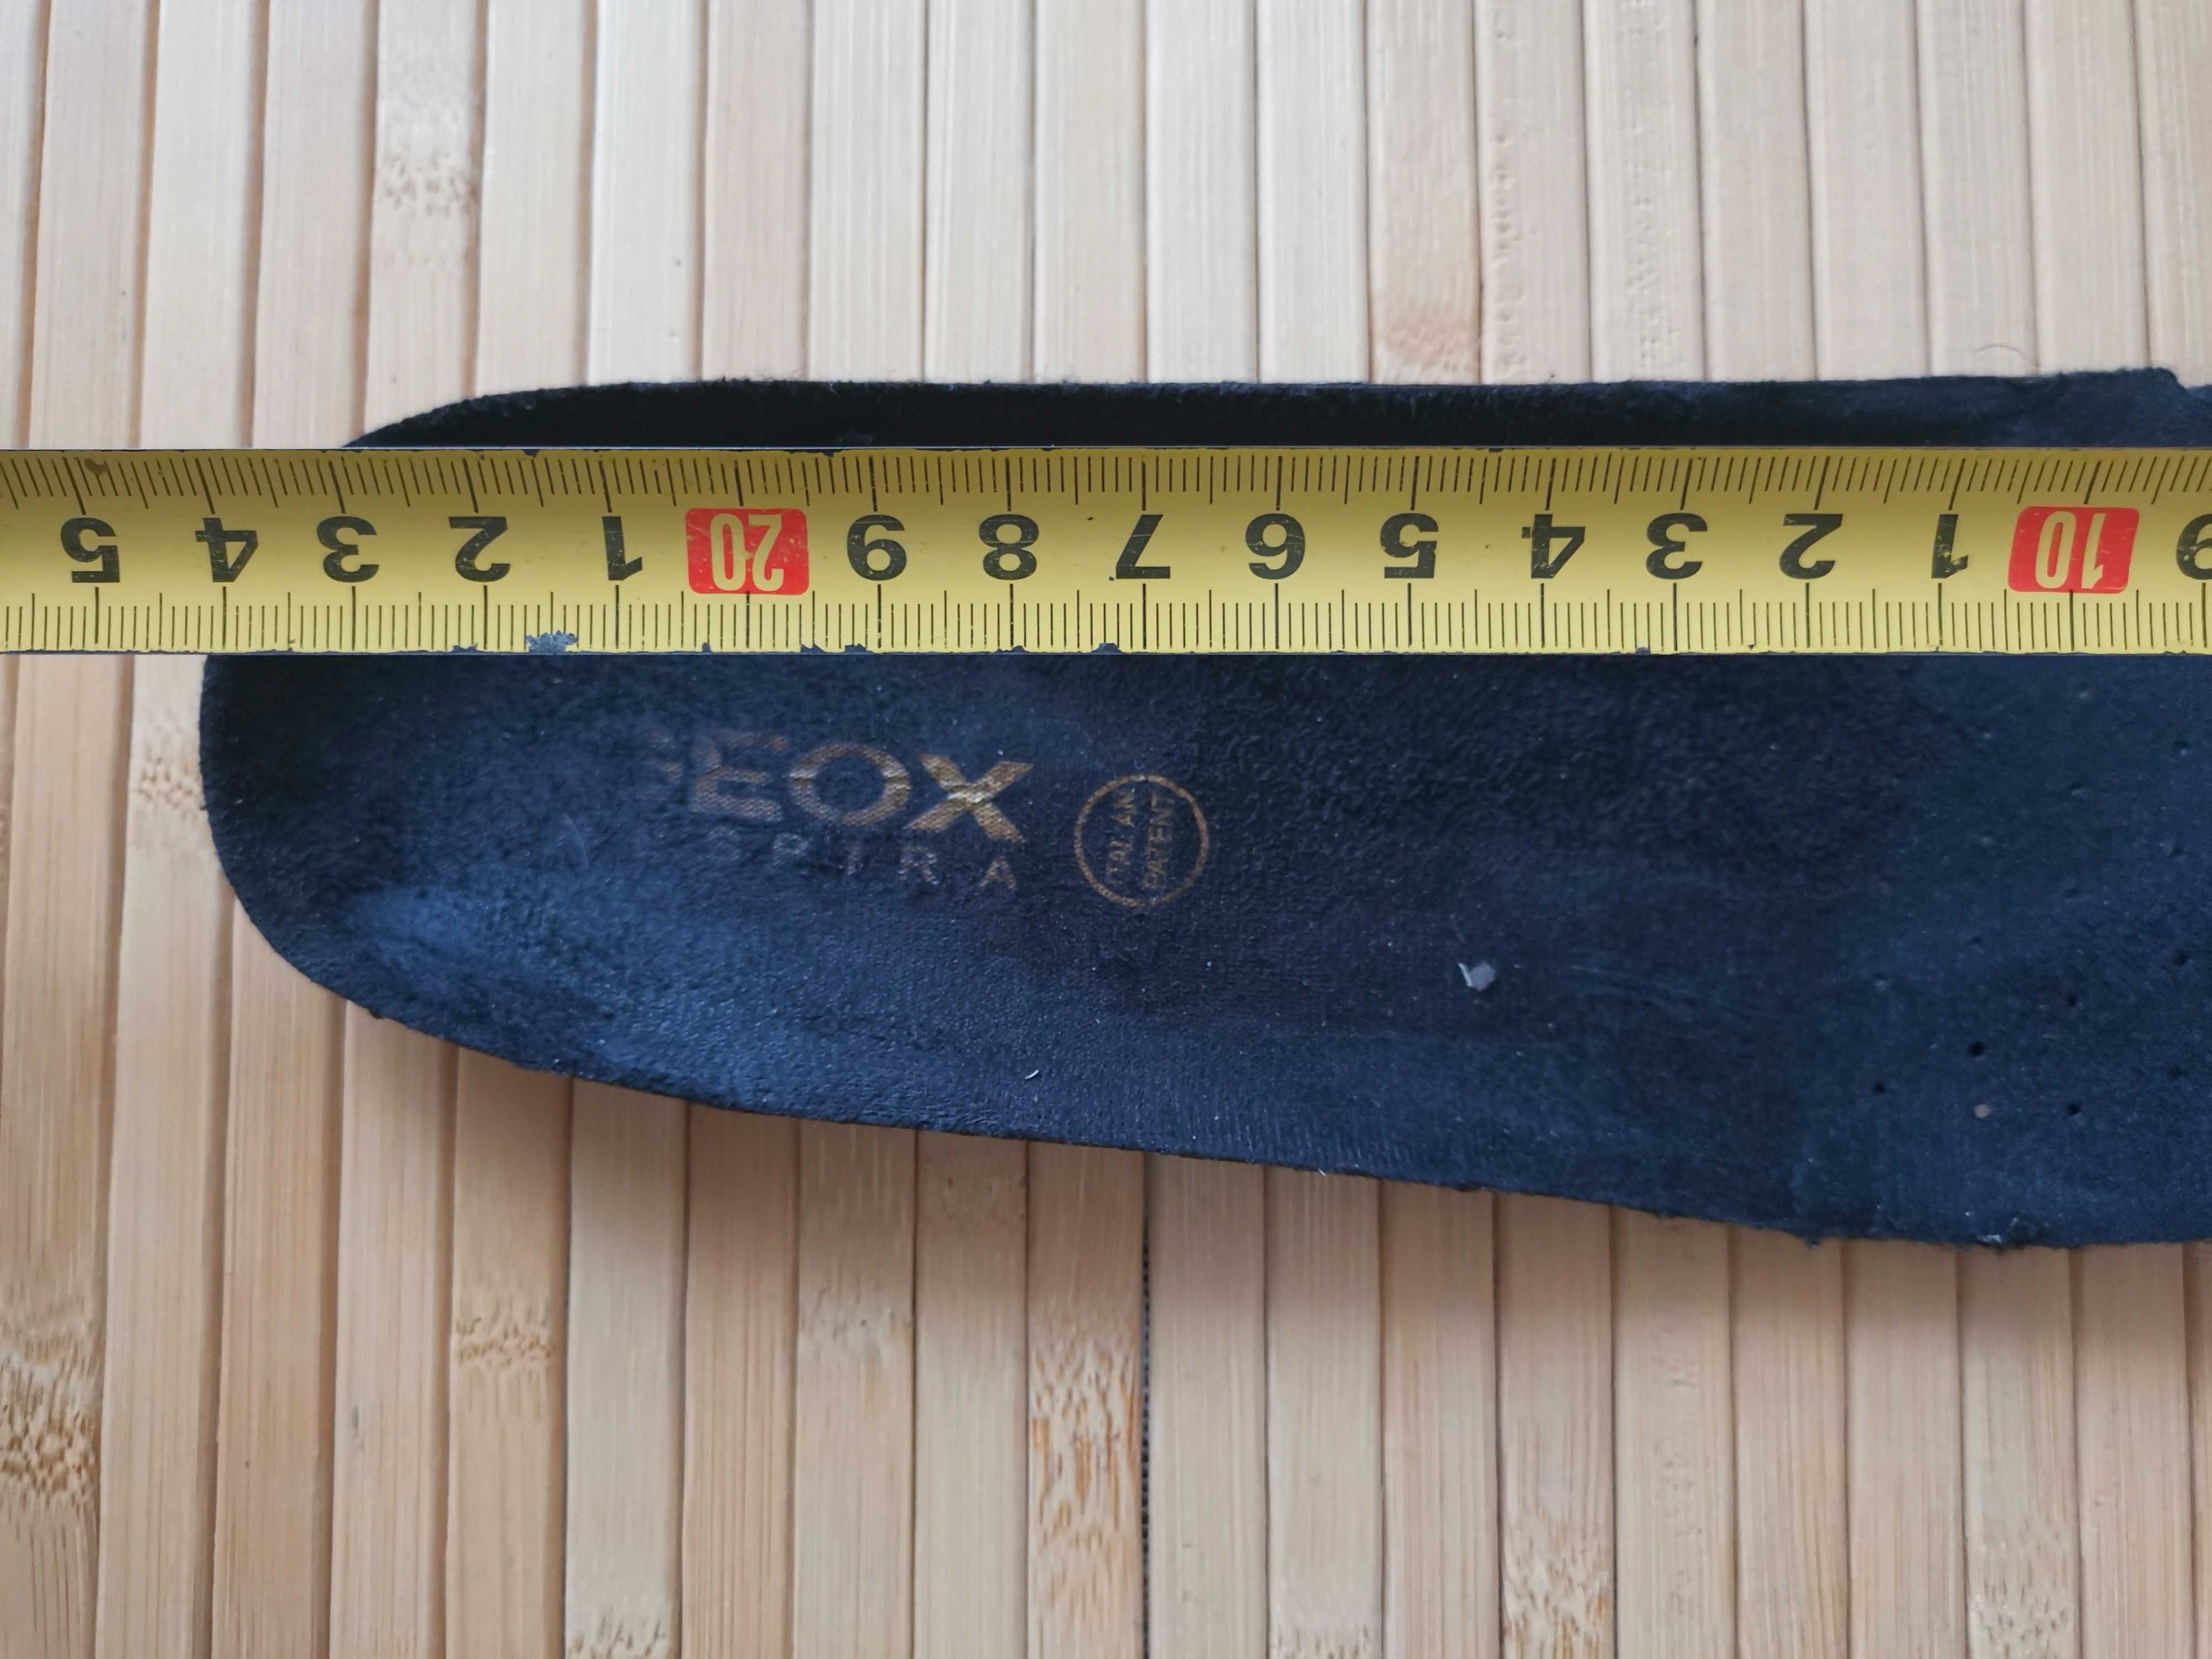 Кожаные сапожки GEOX бренд оригинал - 24 см